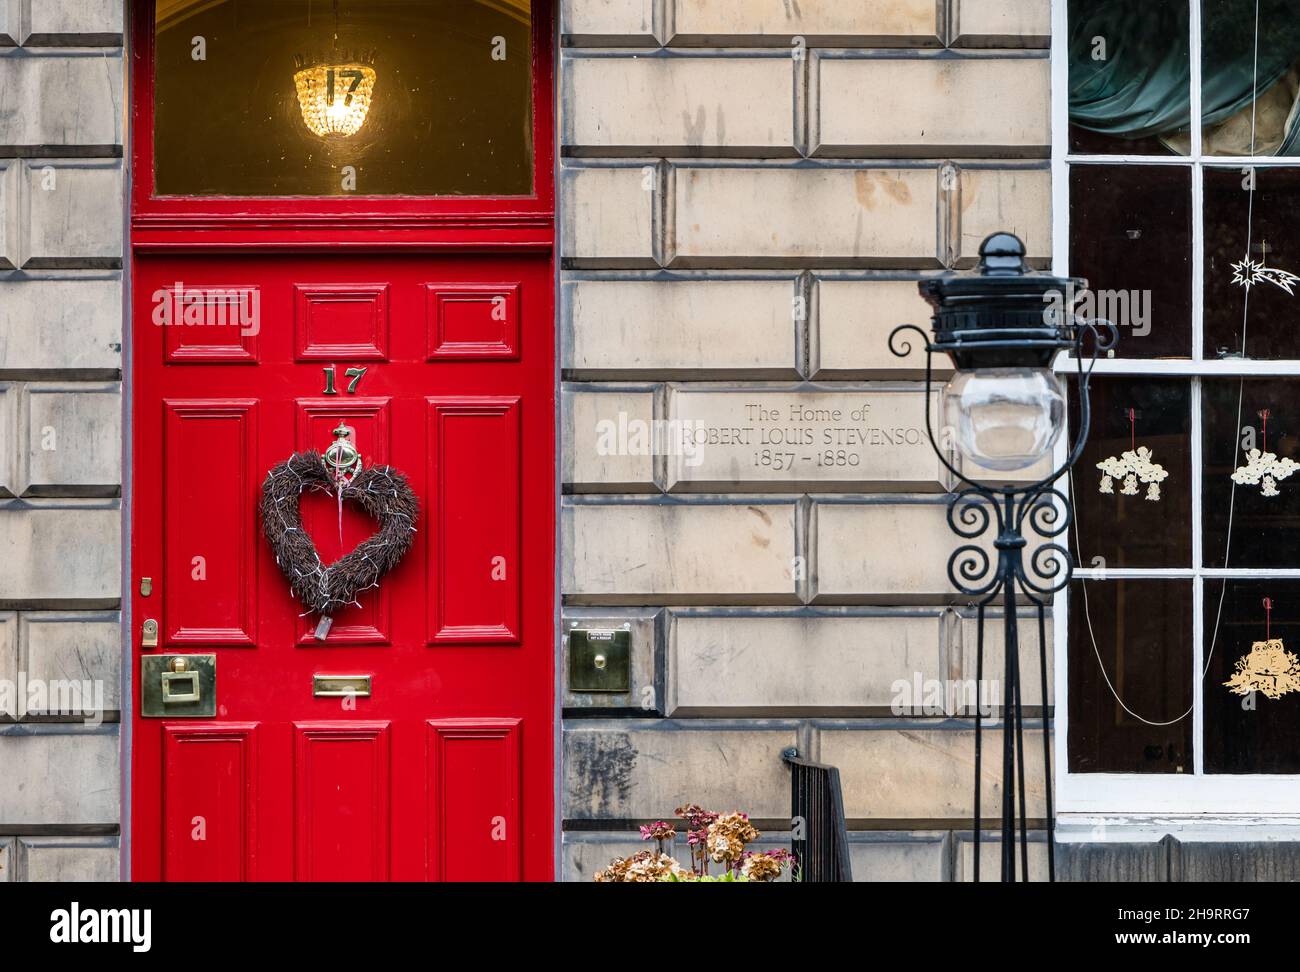 Georgianisches Stadthaus, in dem Robert Louis Stevenson mit einem Weihnachtskranz und einem altmodischen Lampenpfosten lebte, Heriot Row, Edinburgh New Town, Schottland, Großbritannien Stockfoto